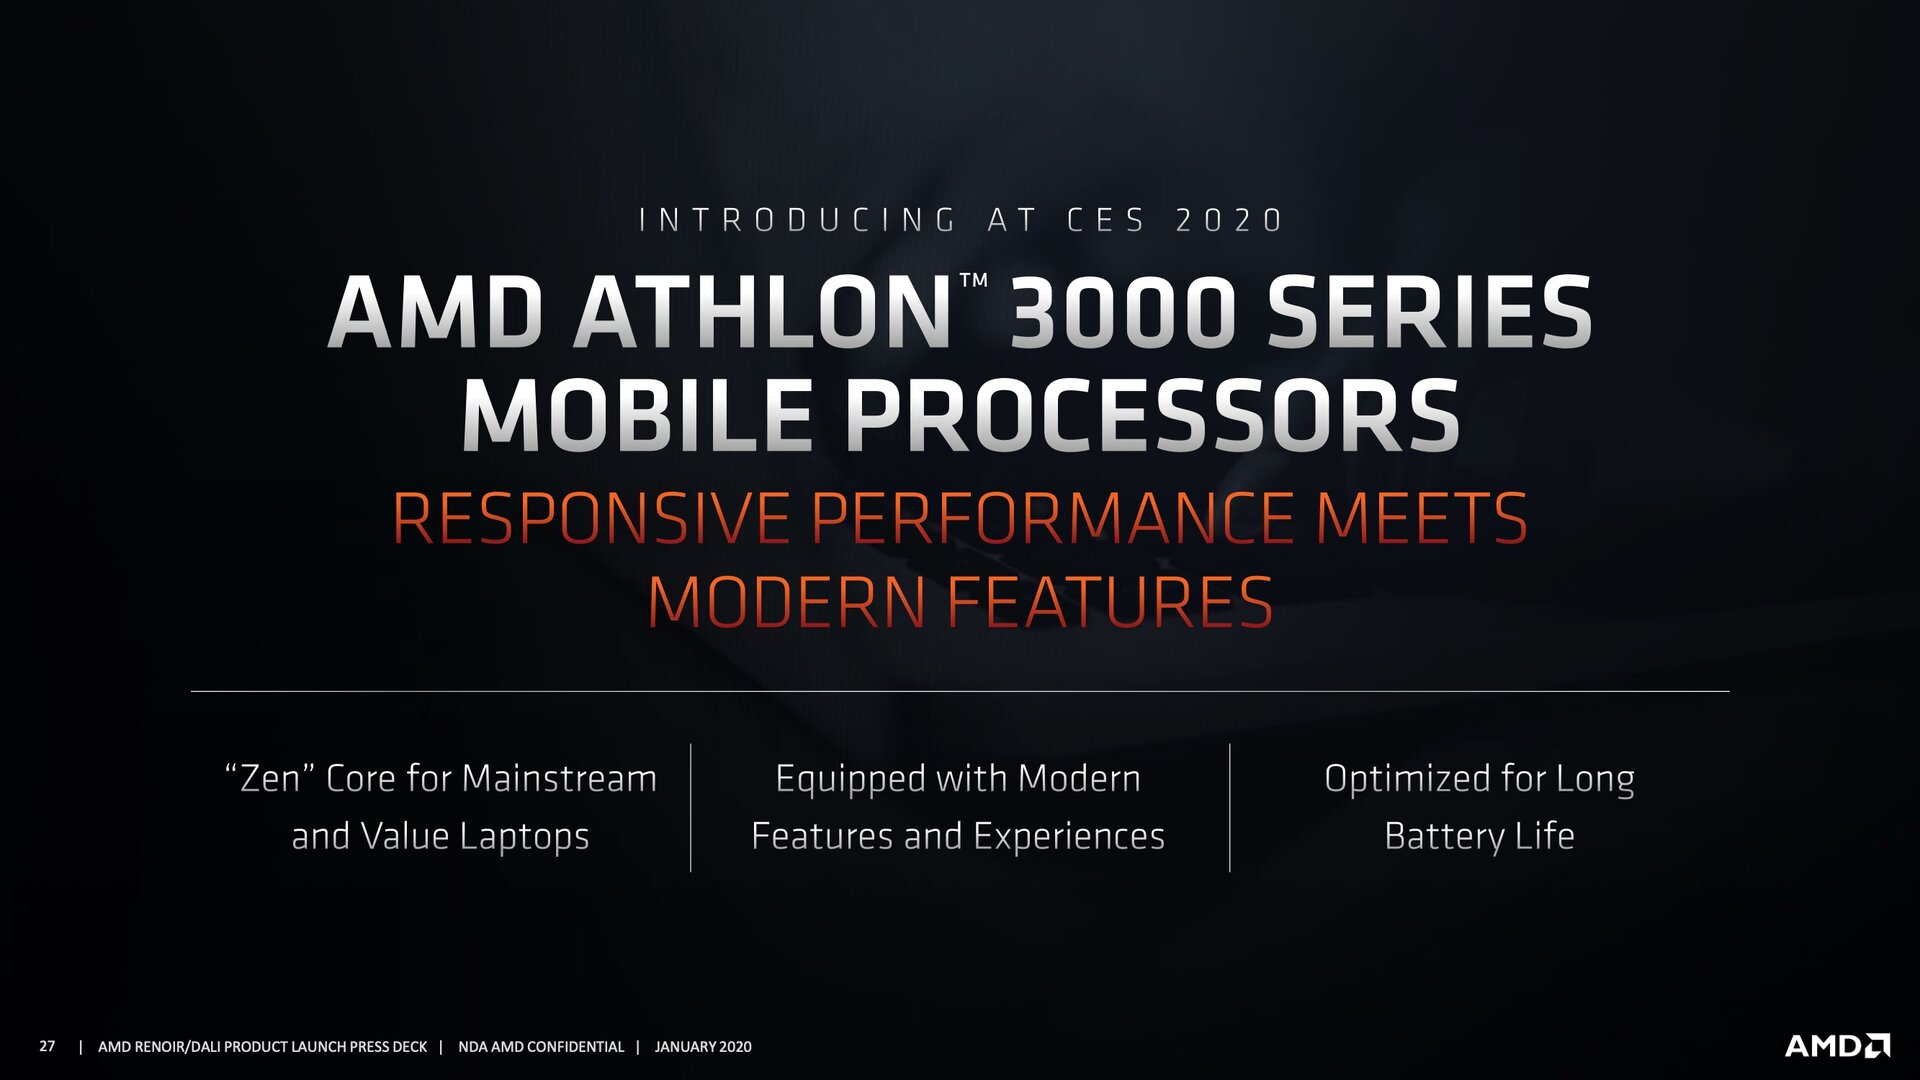 معرض CES2020 :ظهور معالجات Athlon 3000 Gold و Athlon 3000 من شركة AMD بروسيسور